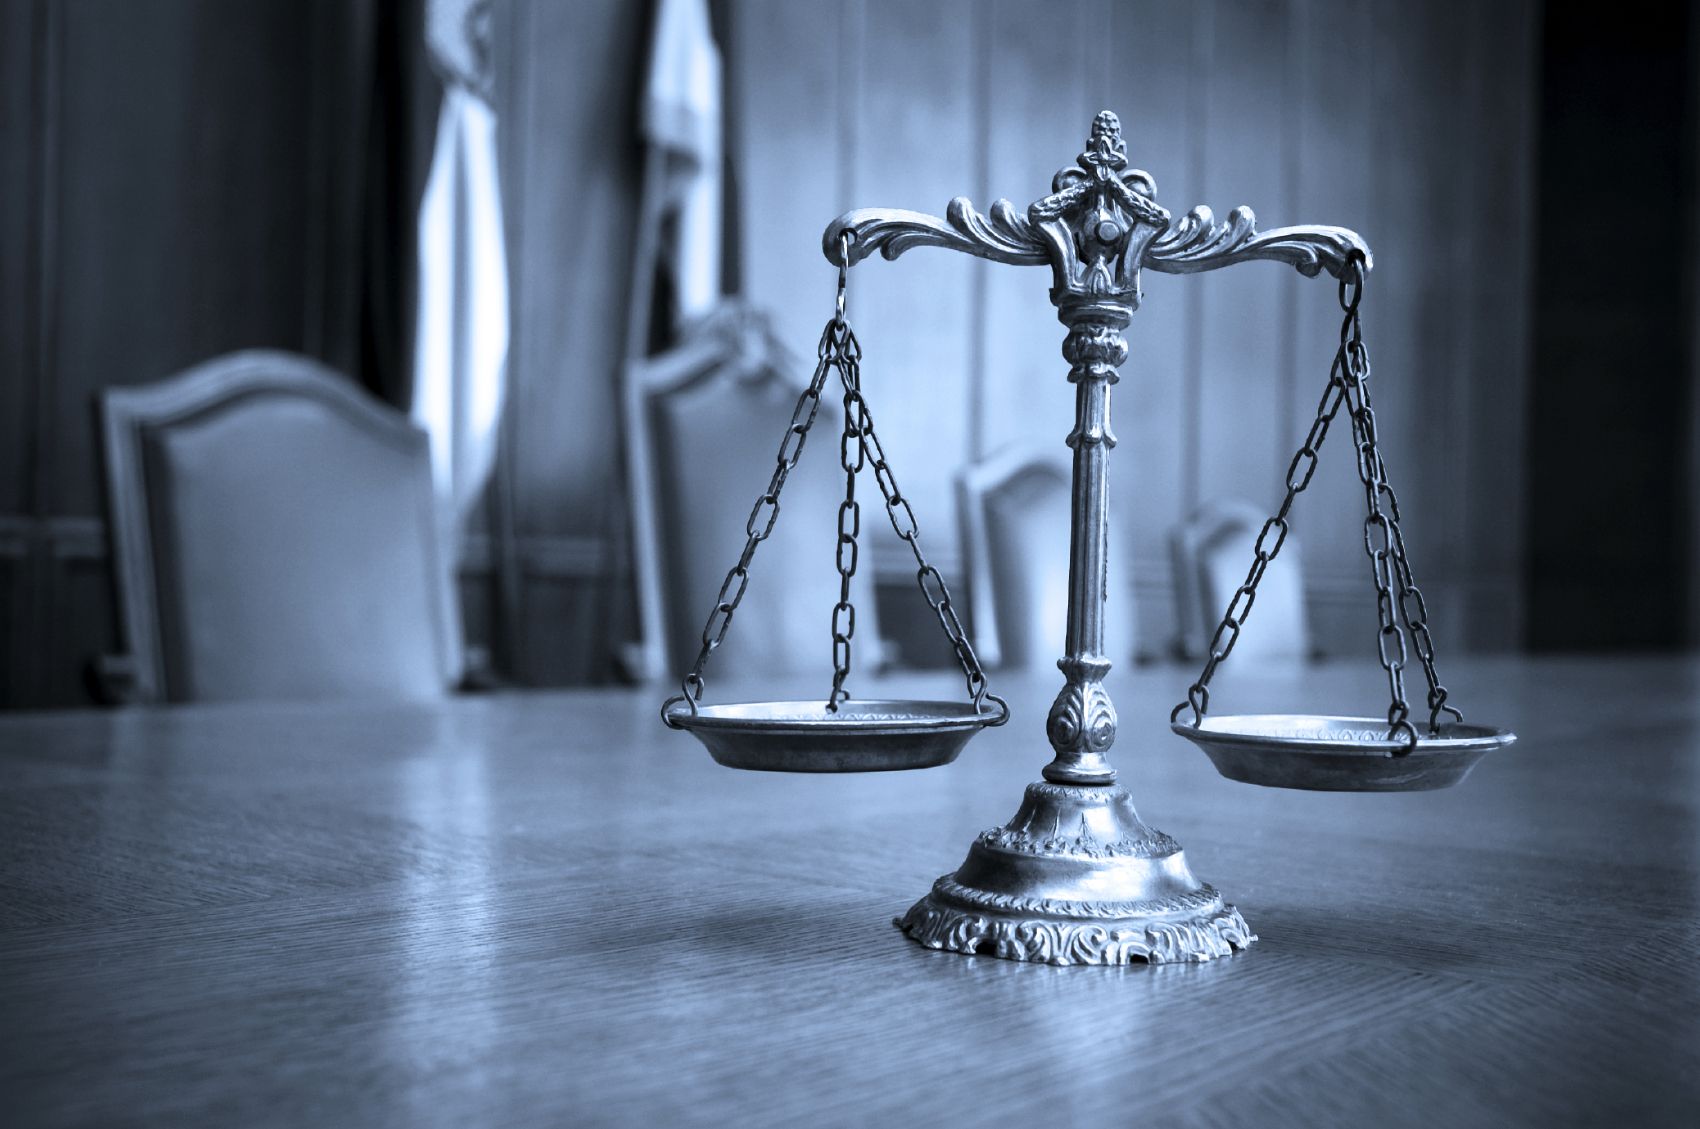 عکس زیبا از ترازوی عدالت بر روی میز چوبی با تم دارک 